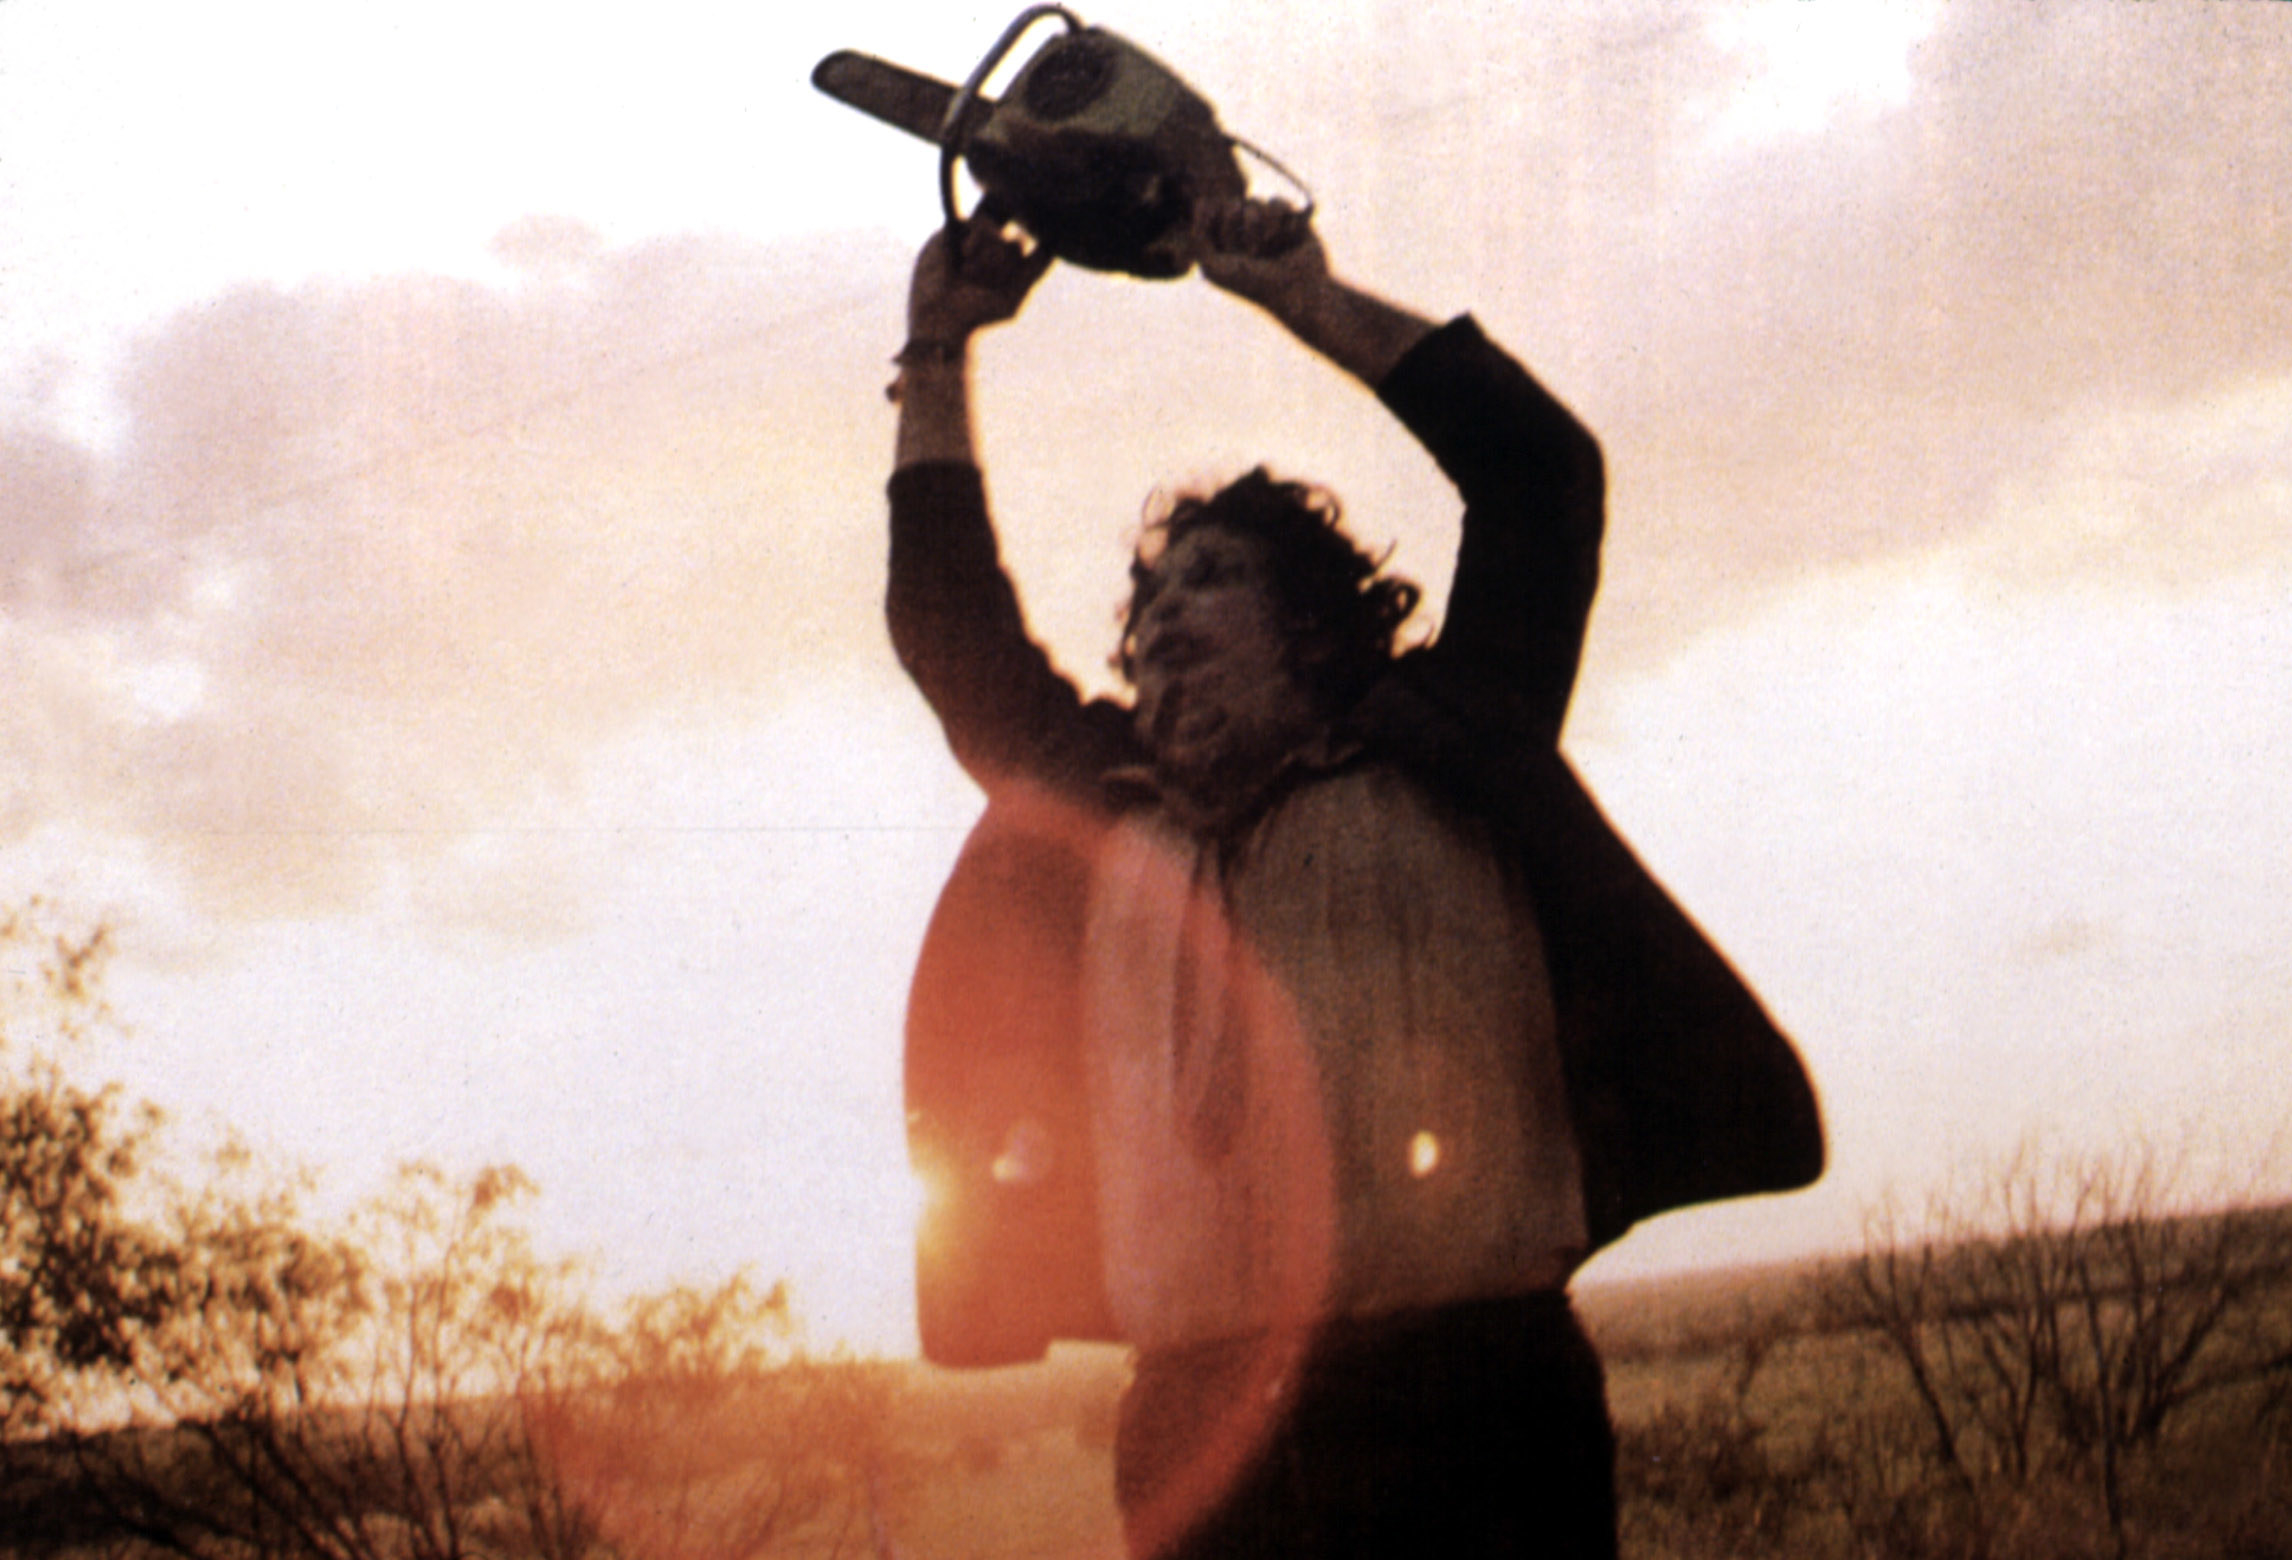 Gunnar Hansen raises a chainsaw over his head